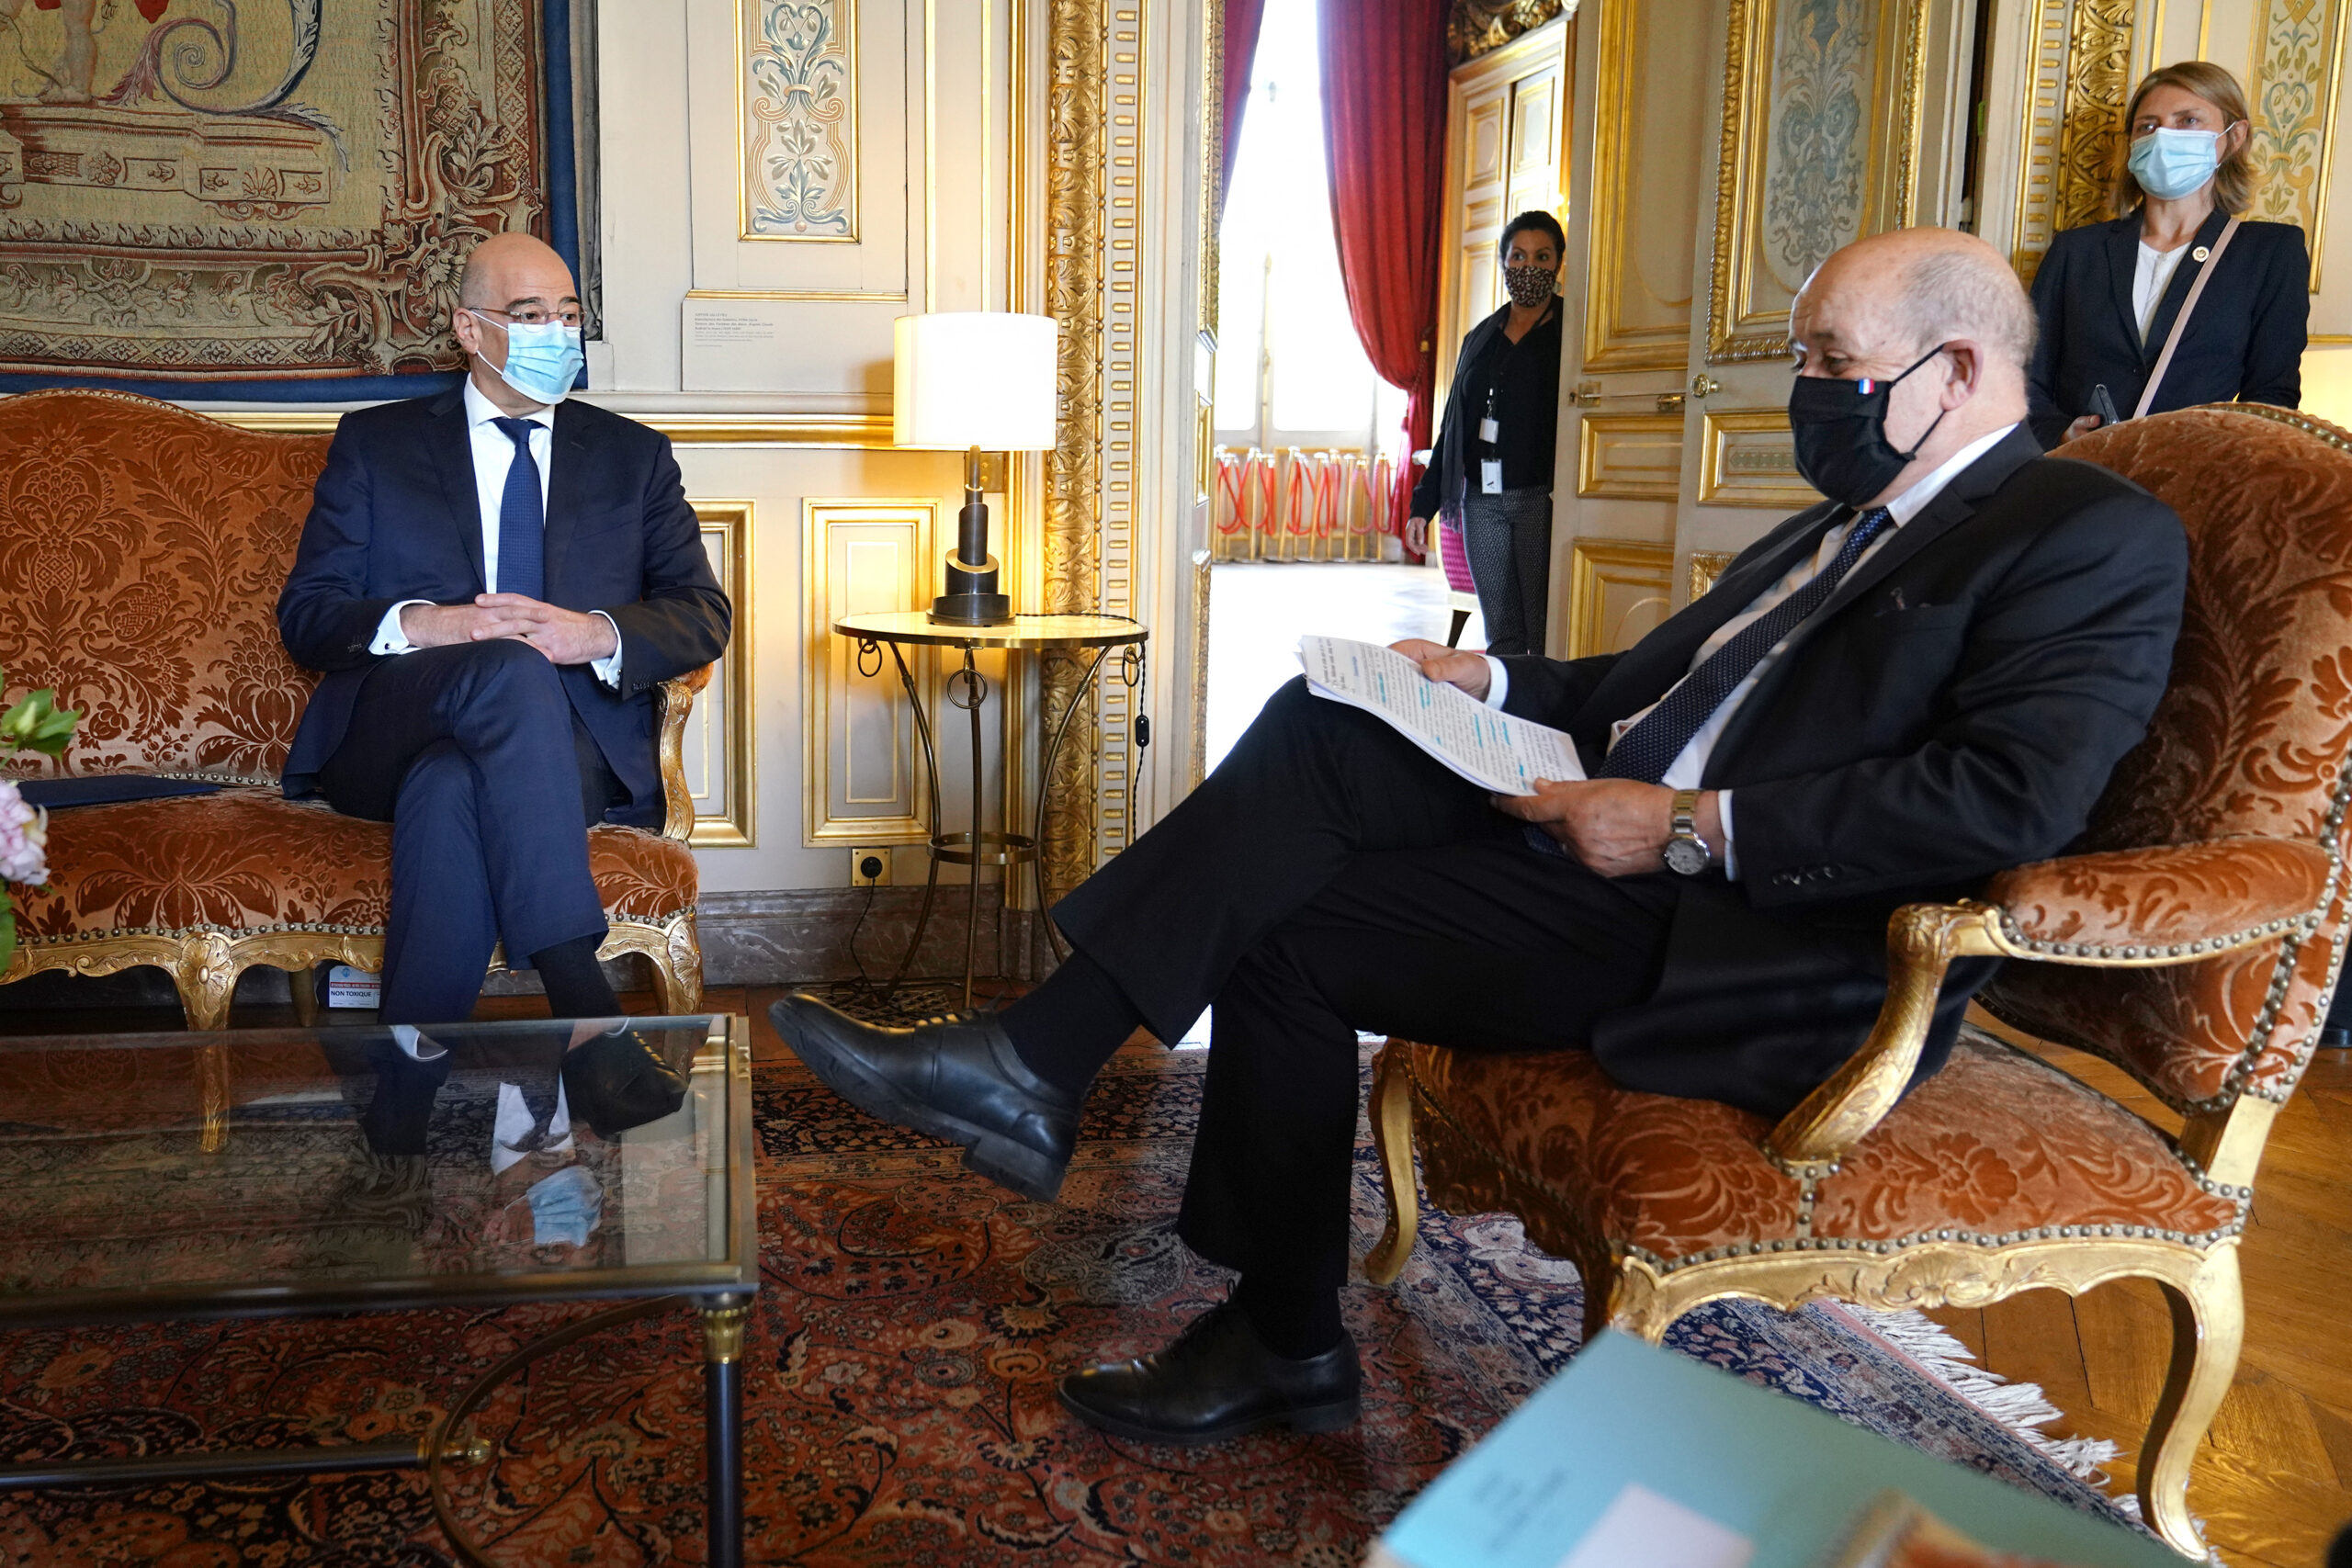 Επίσκεψη του Υπουργού Εξωτερικών, Νίκου Δένδια, στη Γαλλία καισυνάντηση με τον  Υπουργό Εξωτερικών της Γαλλίας, Jean Yves Le Drian.
(Παρίσι, 15.06.2020)